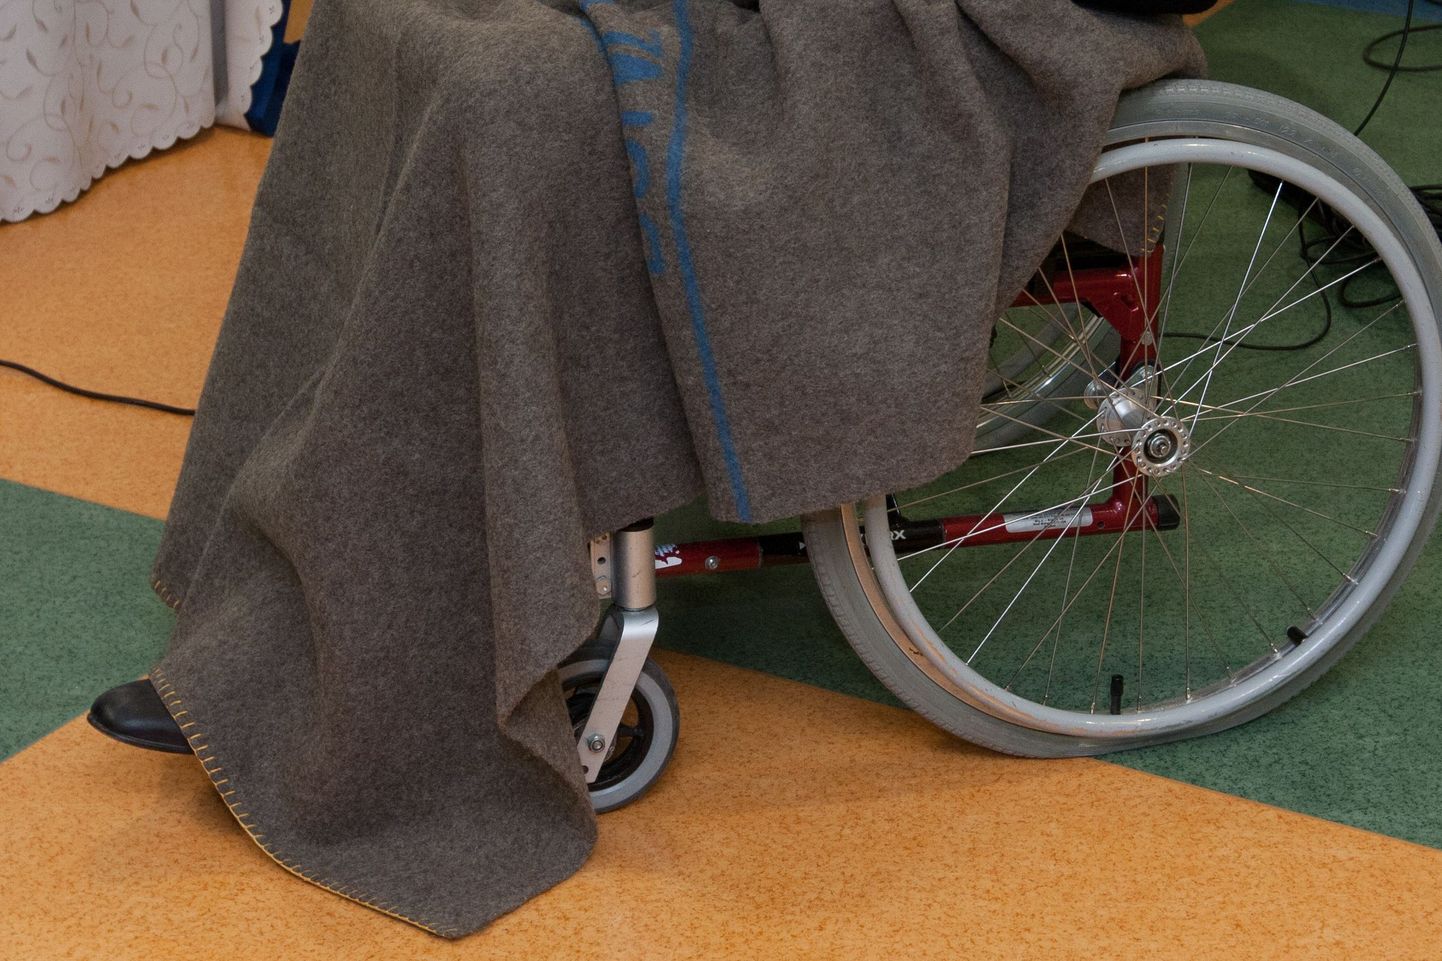 Hooldekodus on tulnud ette sedagi, et klient on ratastooli külge rindkerest kinni seotud. Foto on lavastatud.